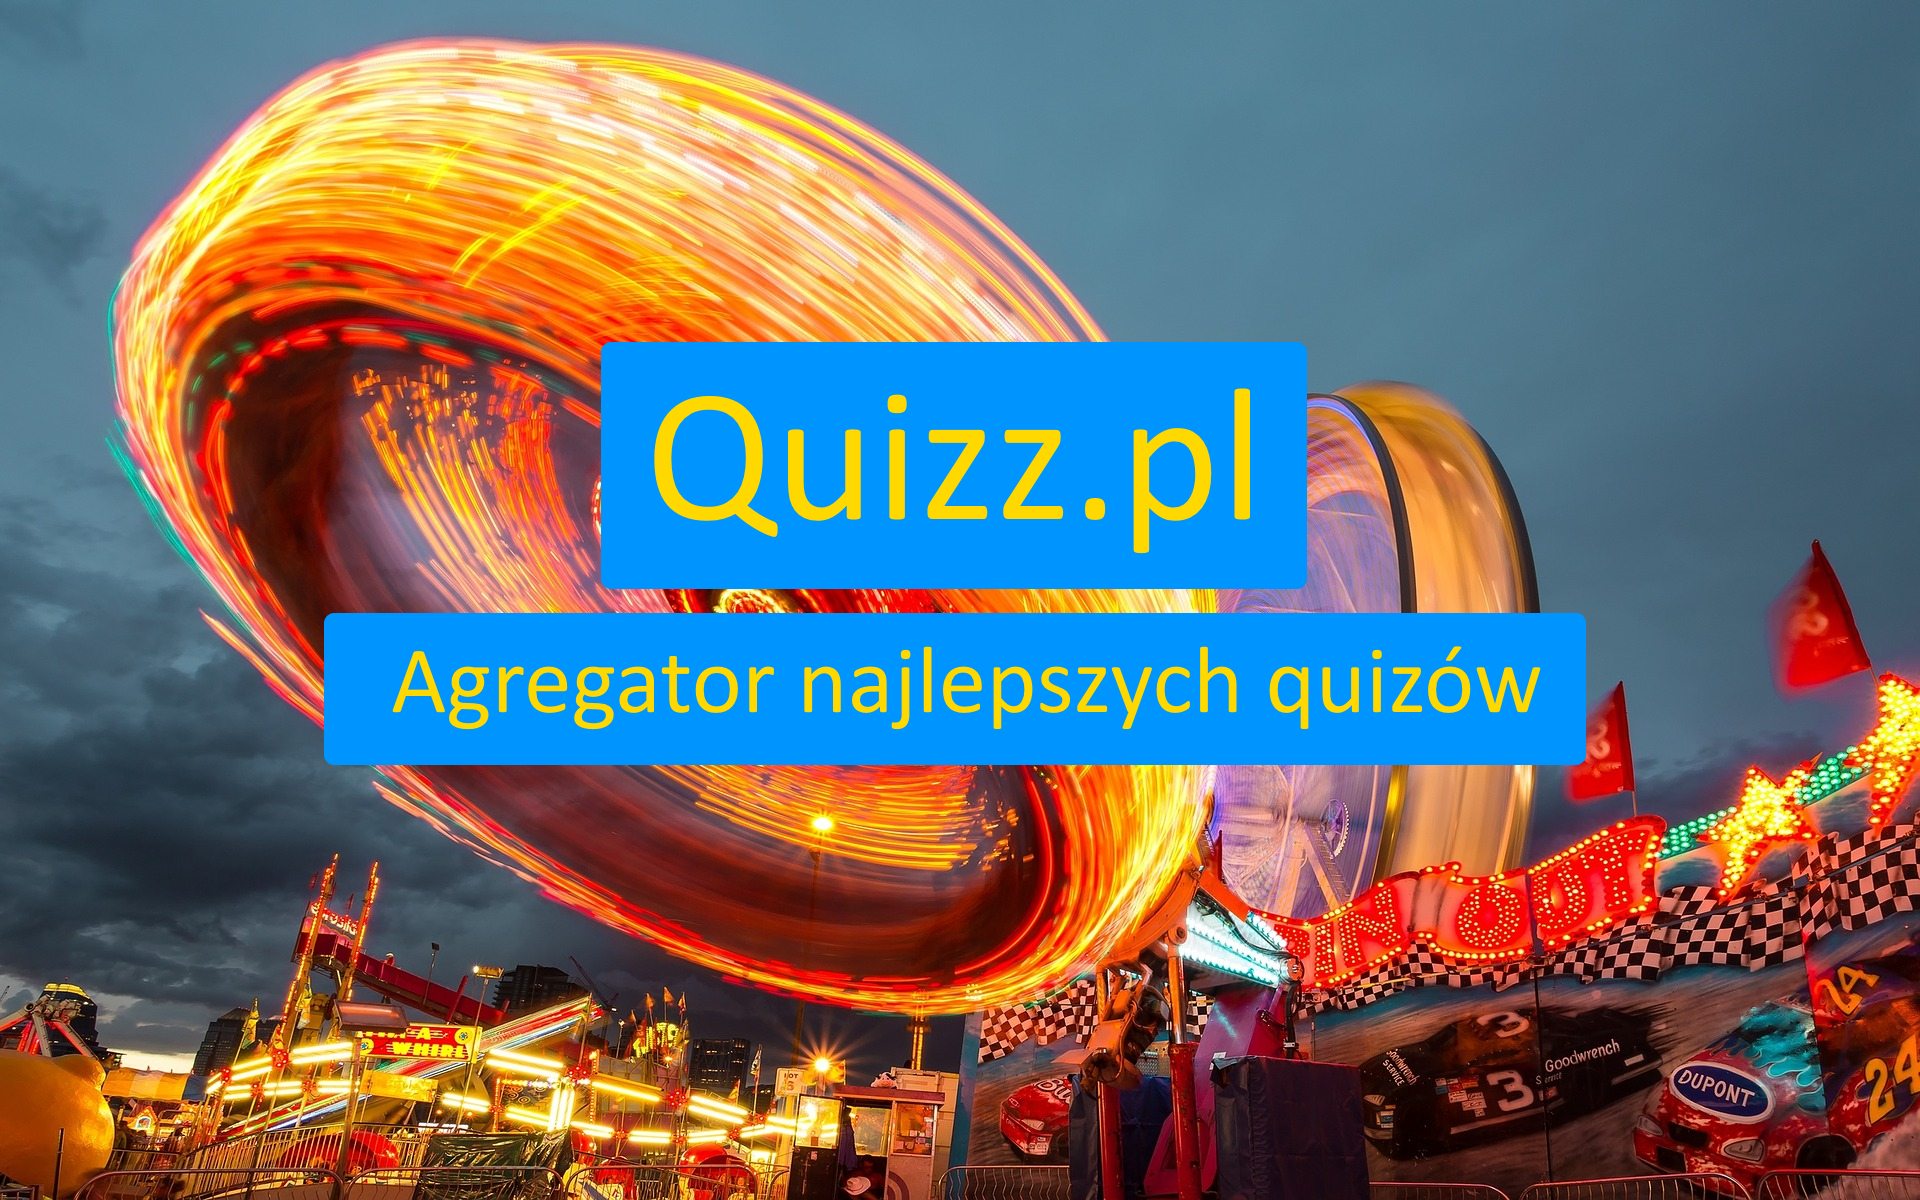 Para - bezpłatne quizy, testy wiedzy i ankiety - www.quizz.pl